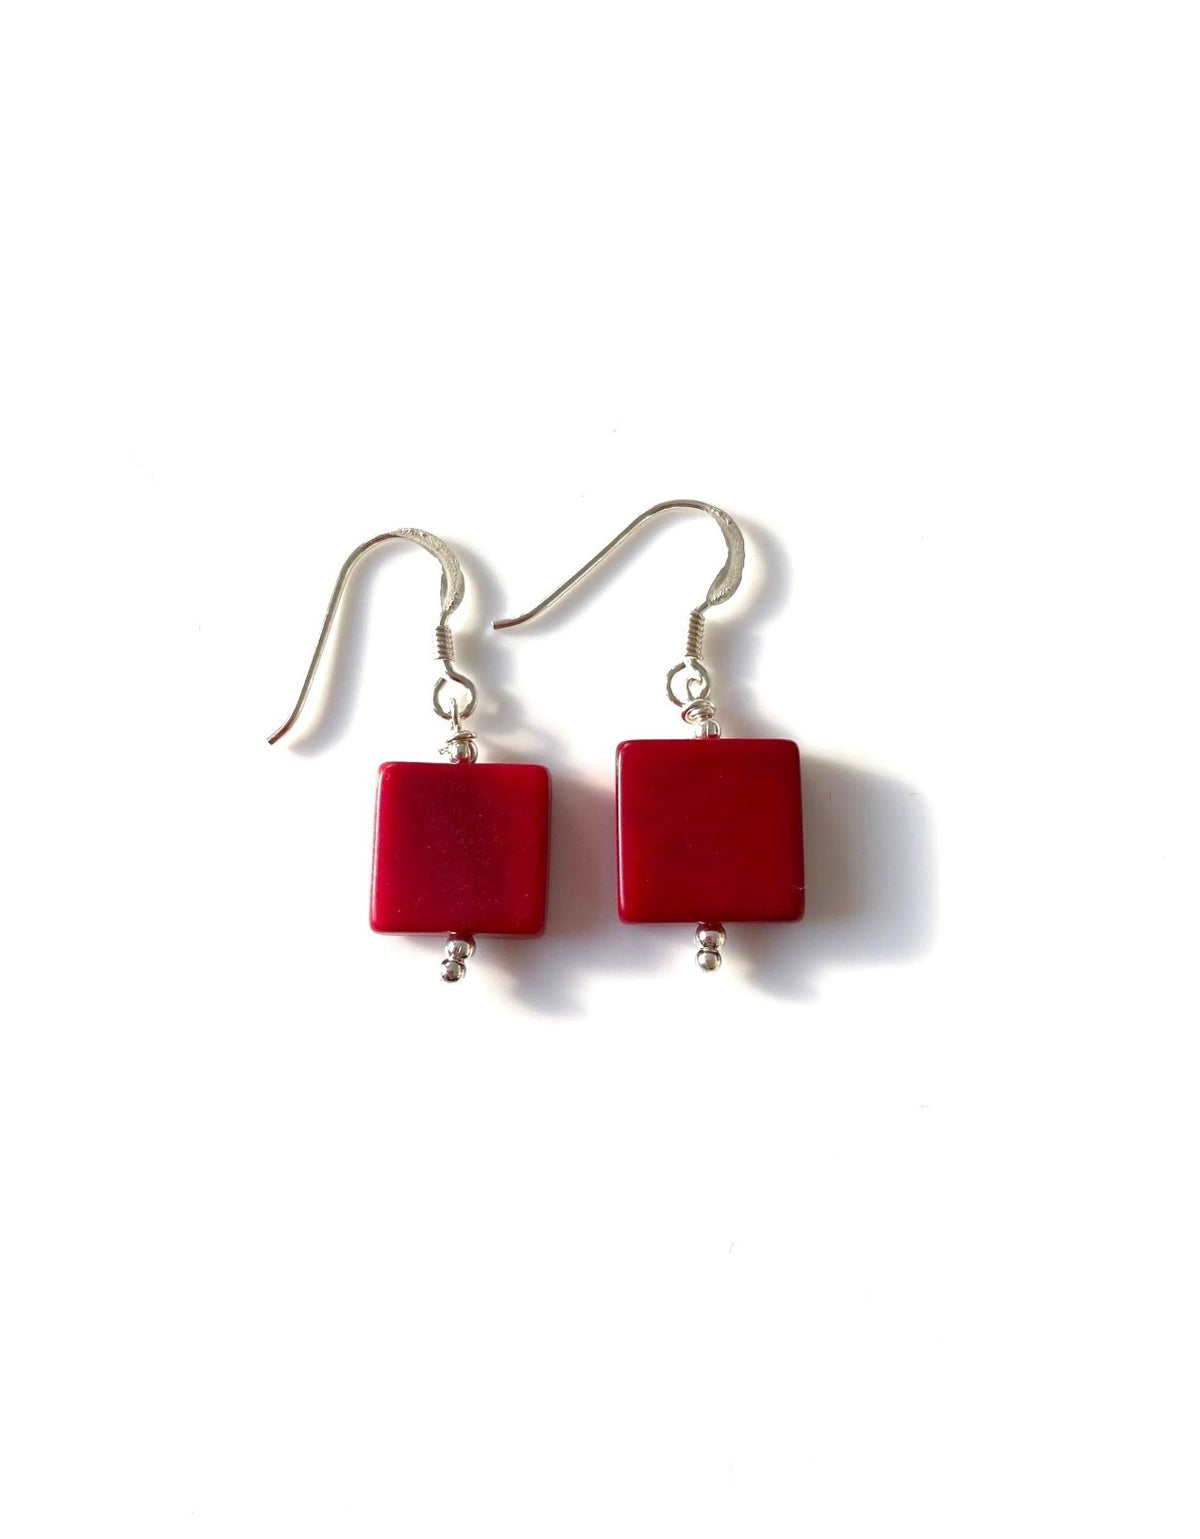 Cuadritos earrings (11mm) - Red